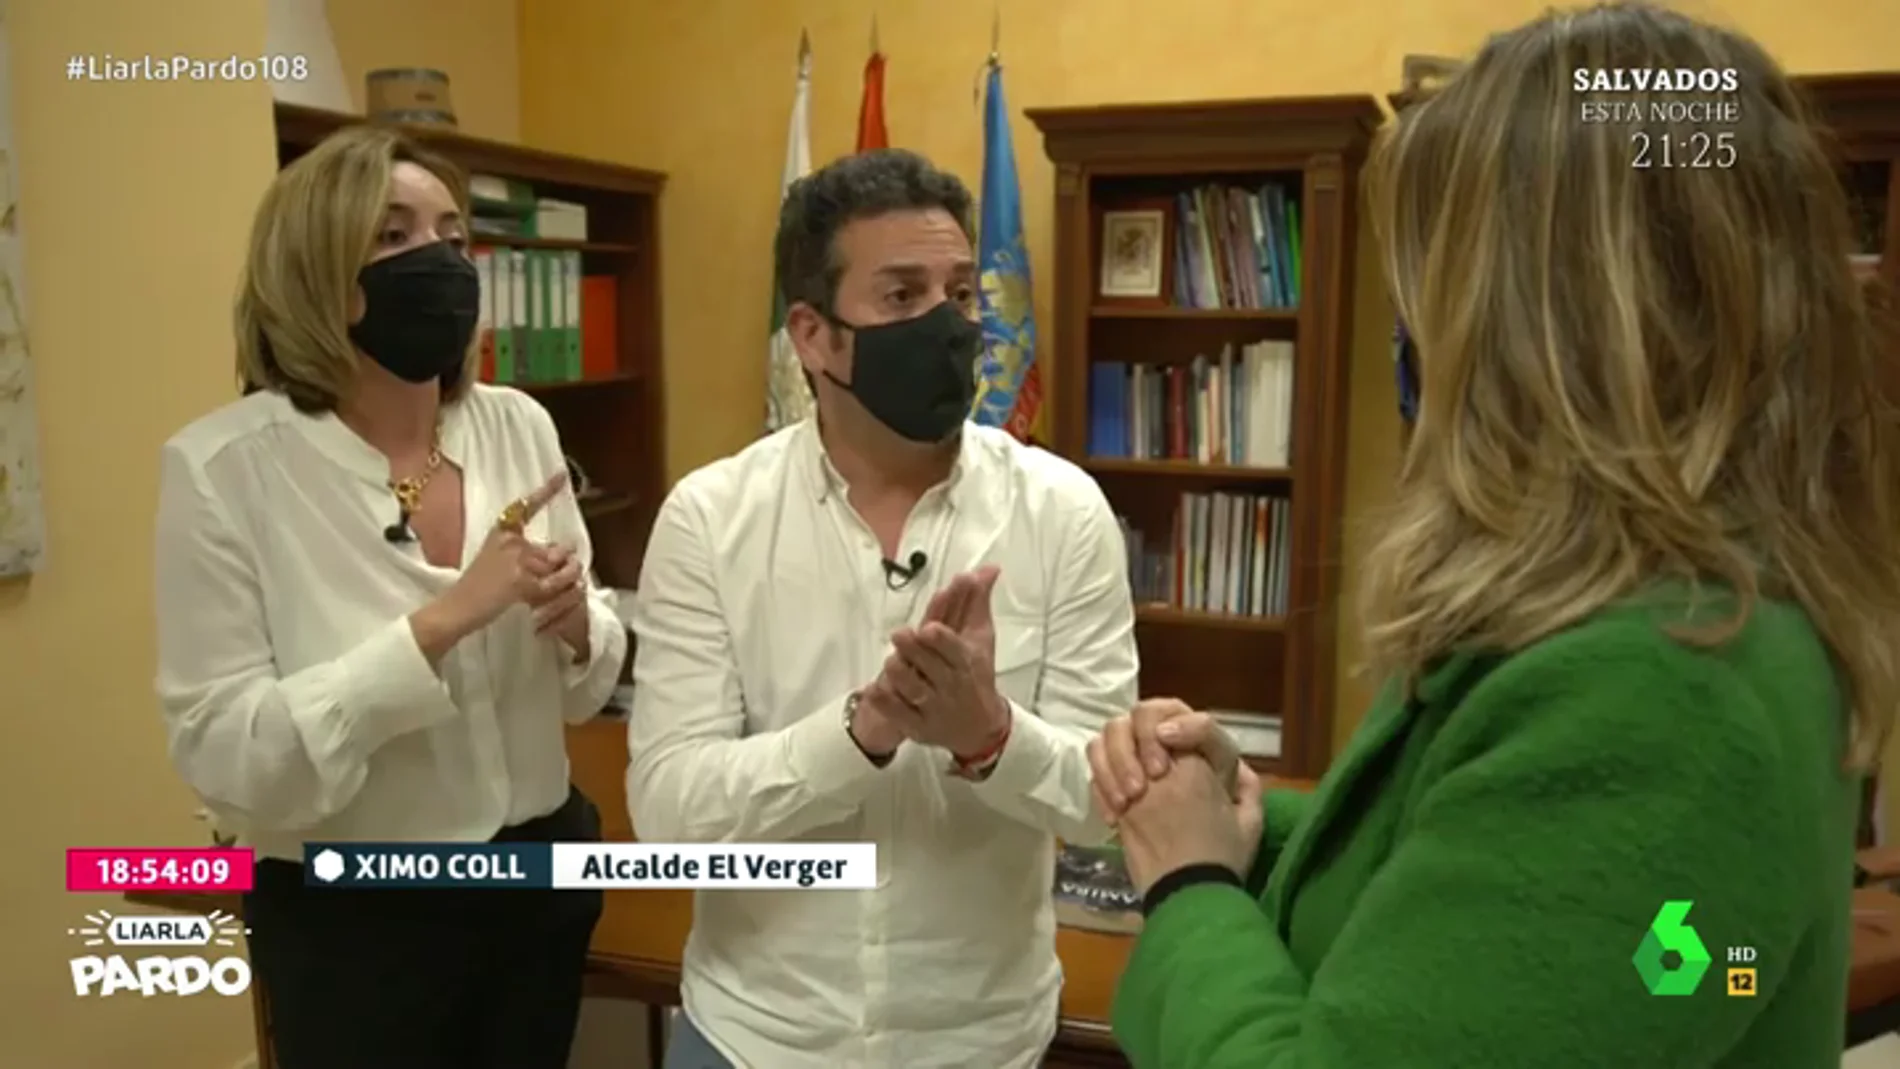 Los alcaldes de Els Poblets y El Verger se defienden tras recibir la vacuna: "Fue orden del centro de salud"